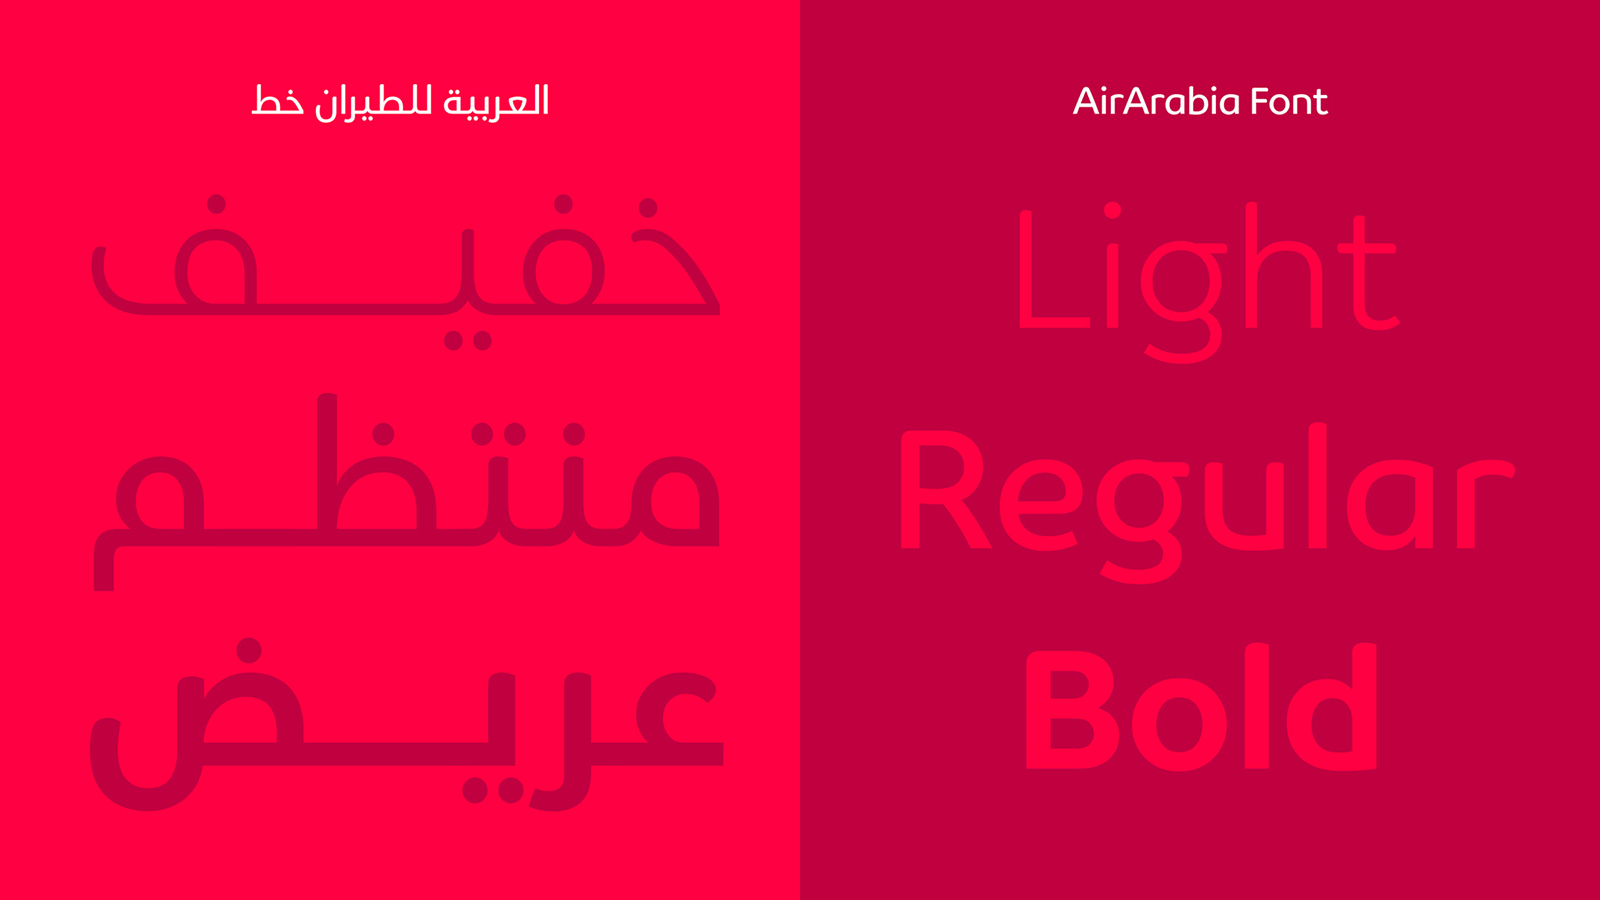 阿拉伯航空公司发布全新的logo和VI识别形象系统设计-深圳vi设计6